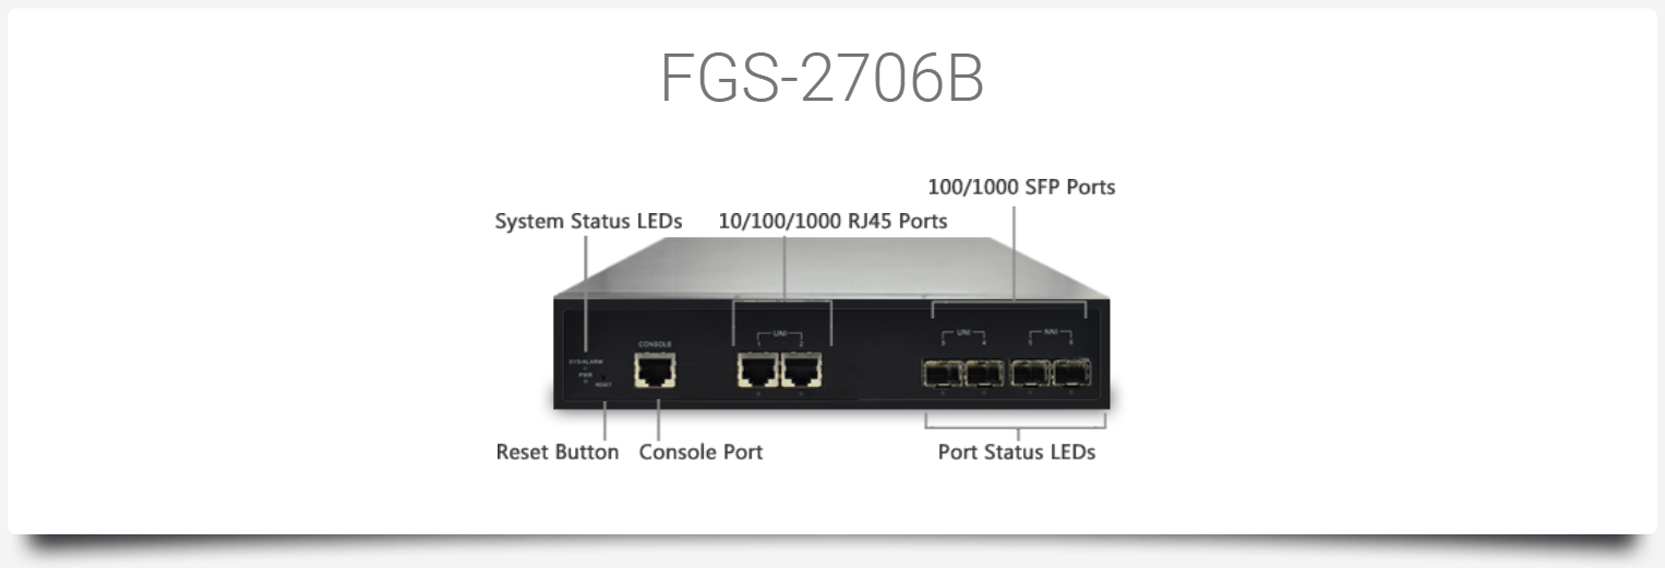 FGS-2706B